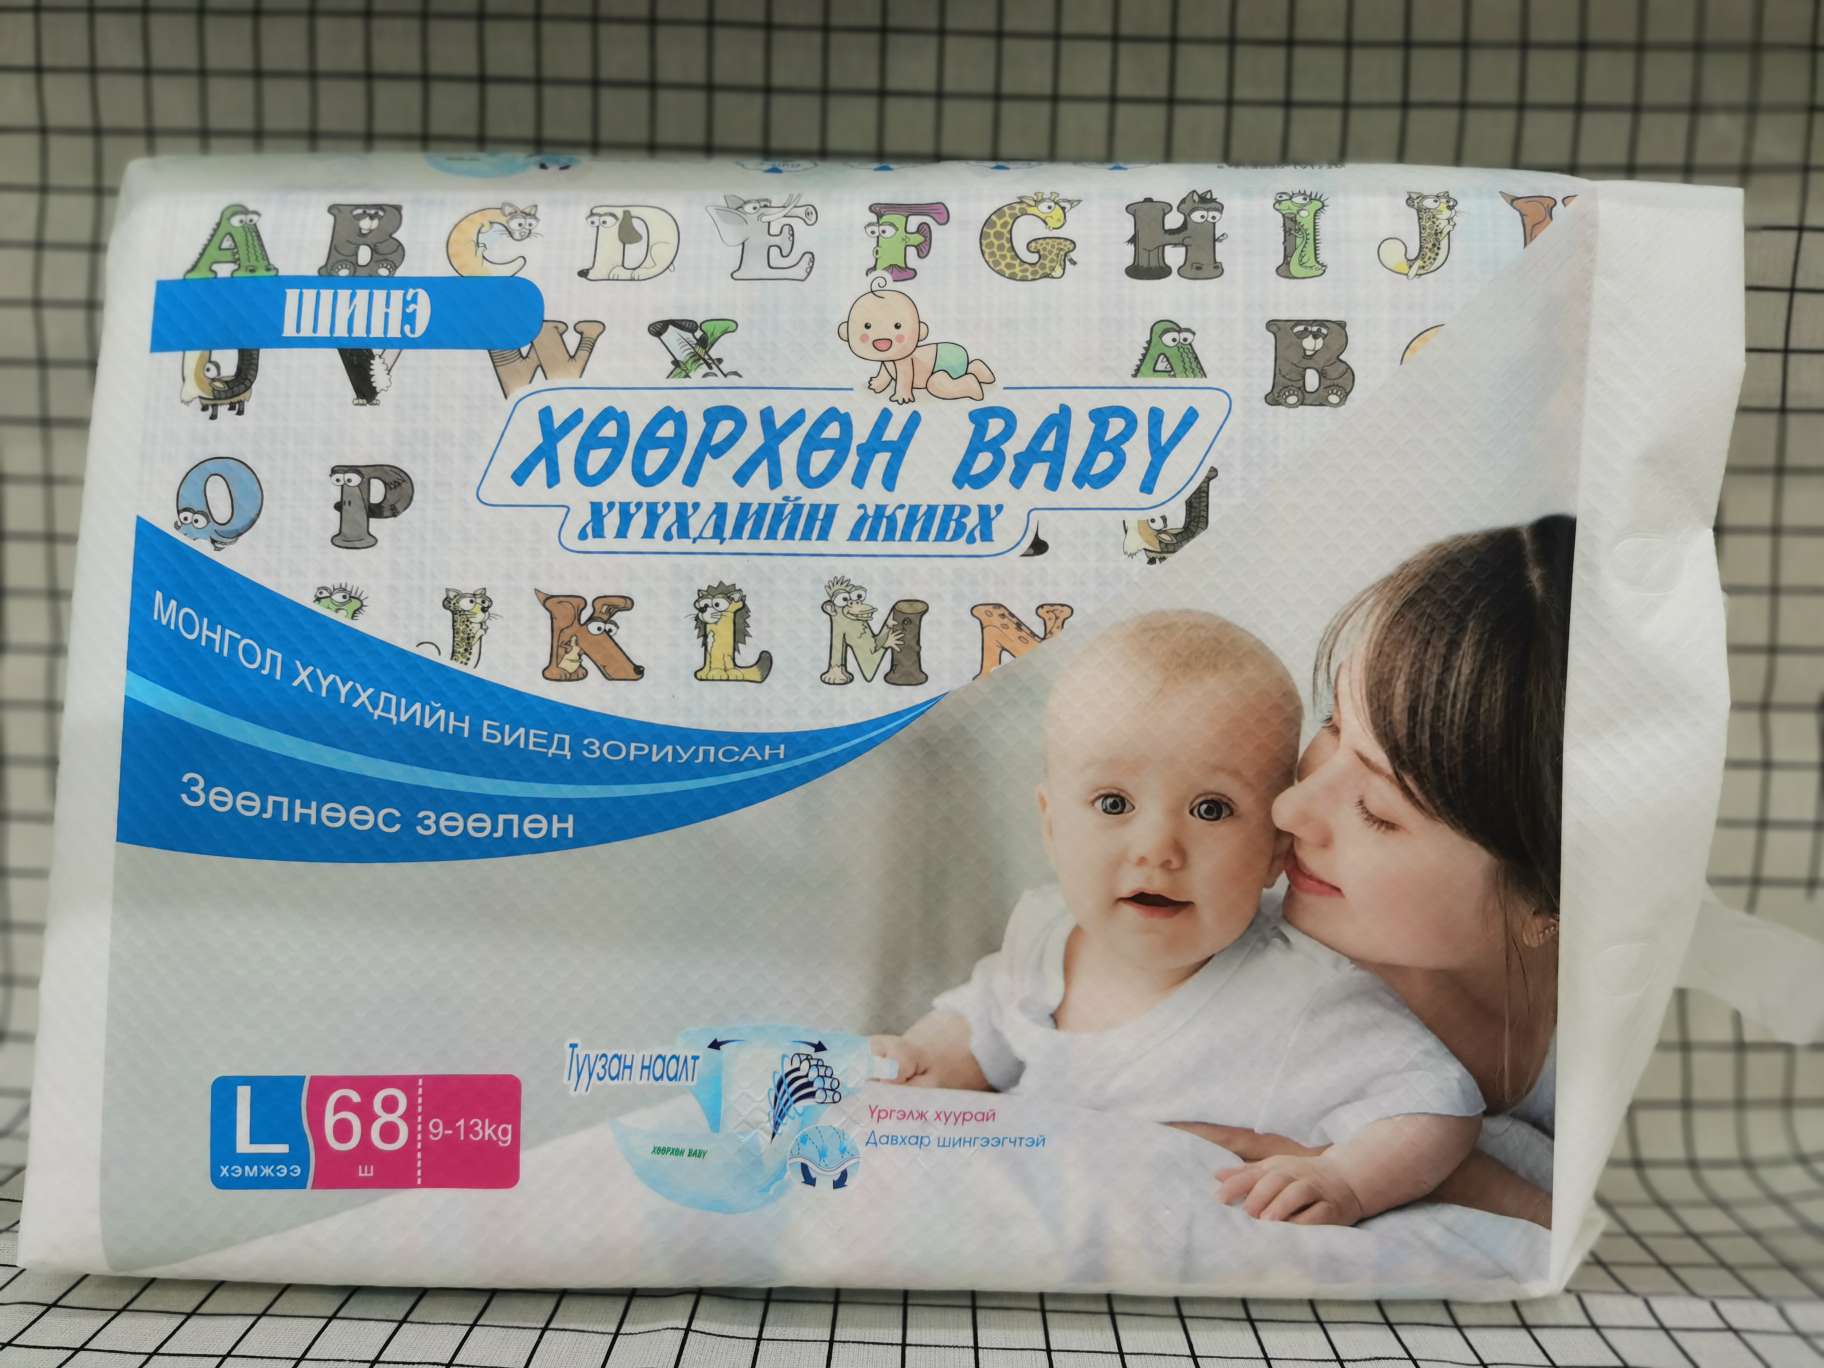 baby diaper :
L 68 pcs
电联订做图